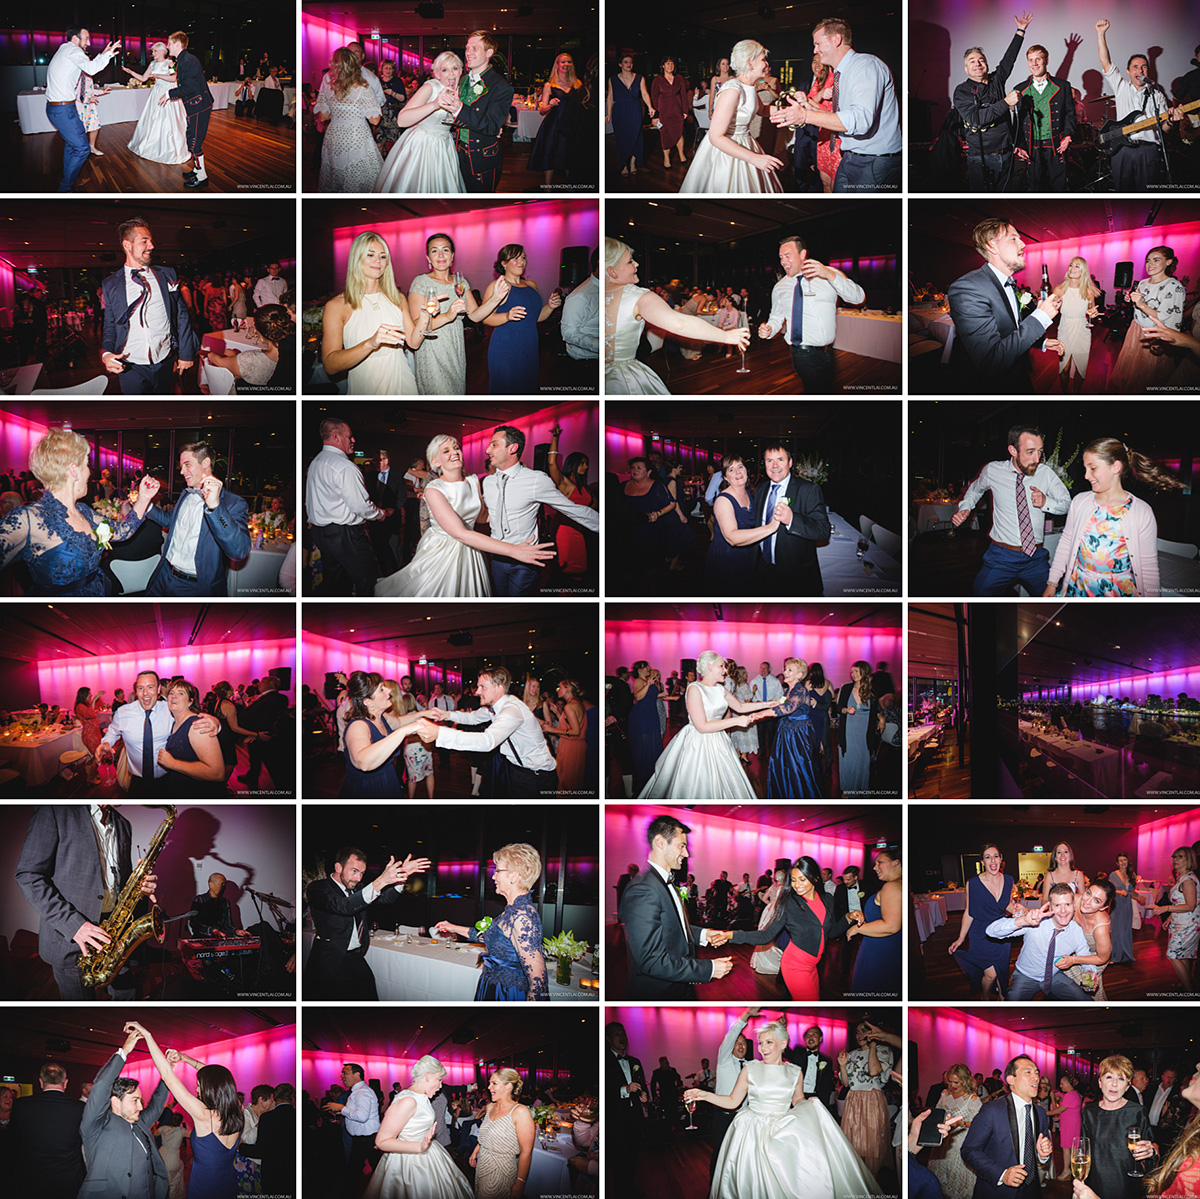 Sydney Wedding Dance Party 